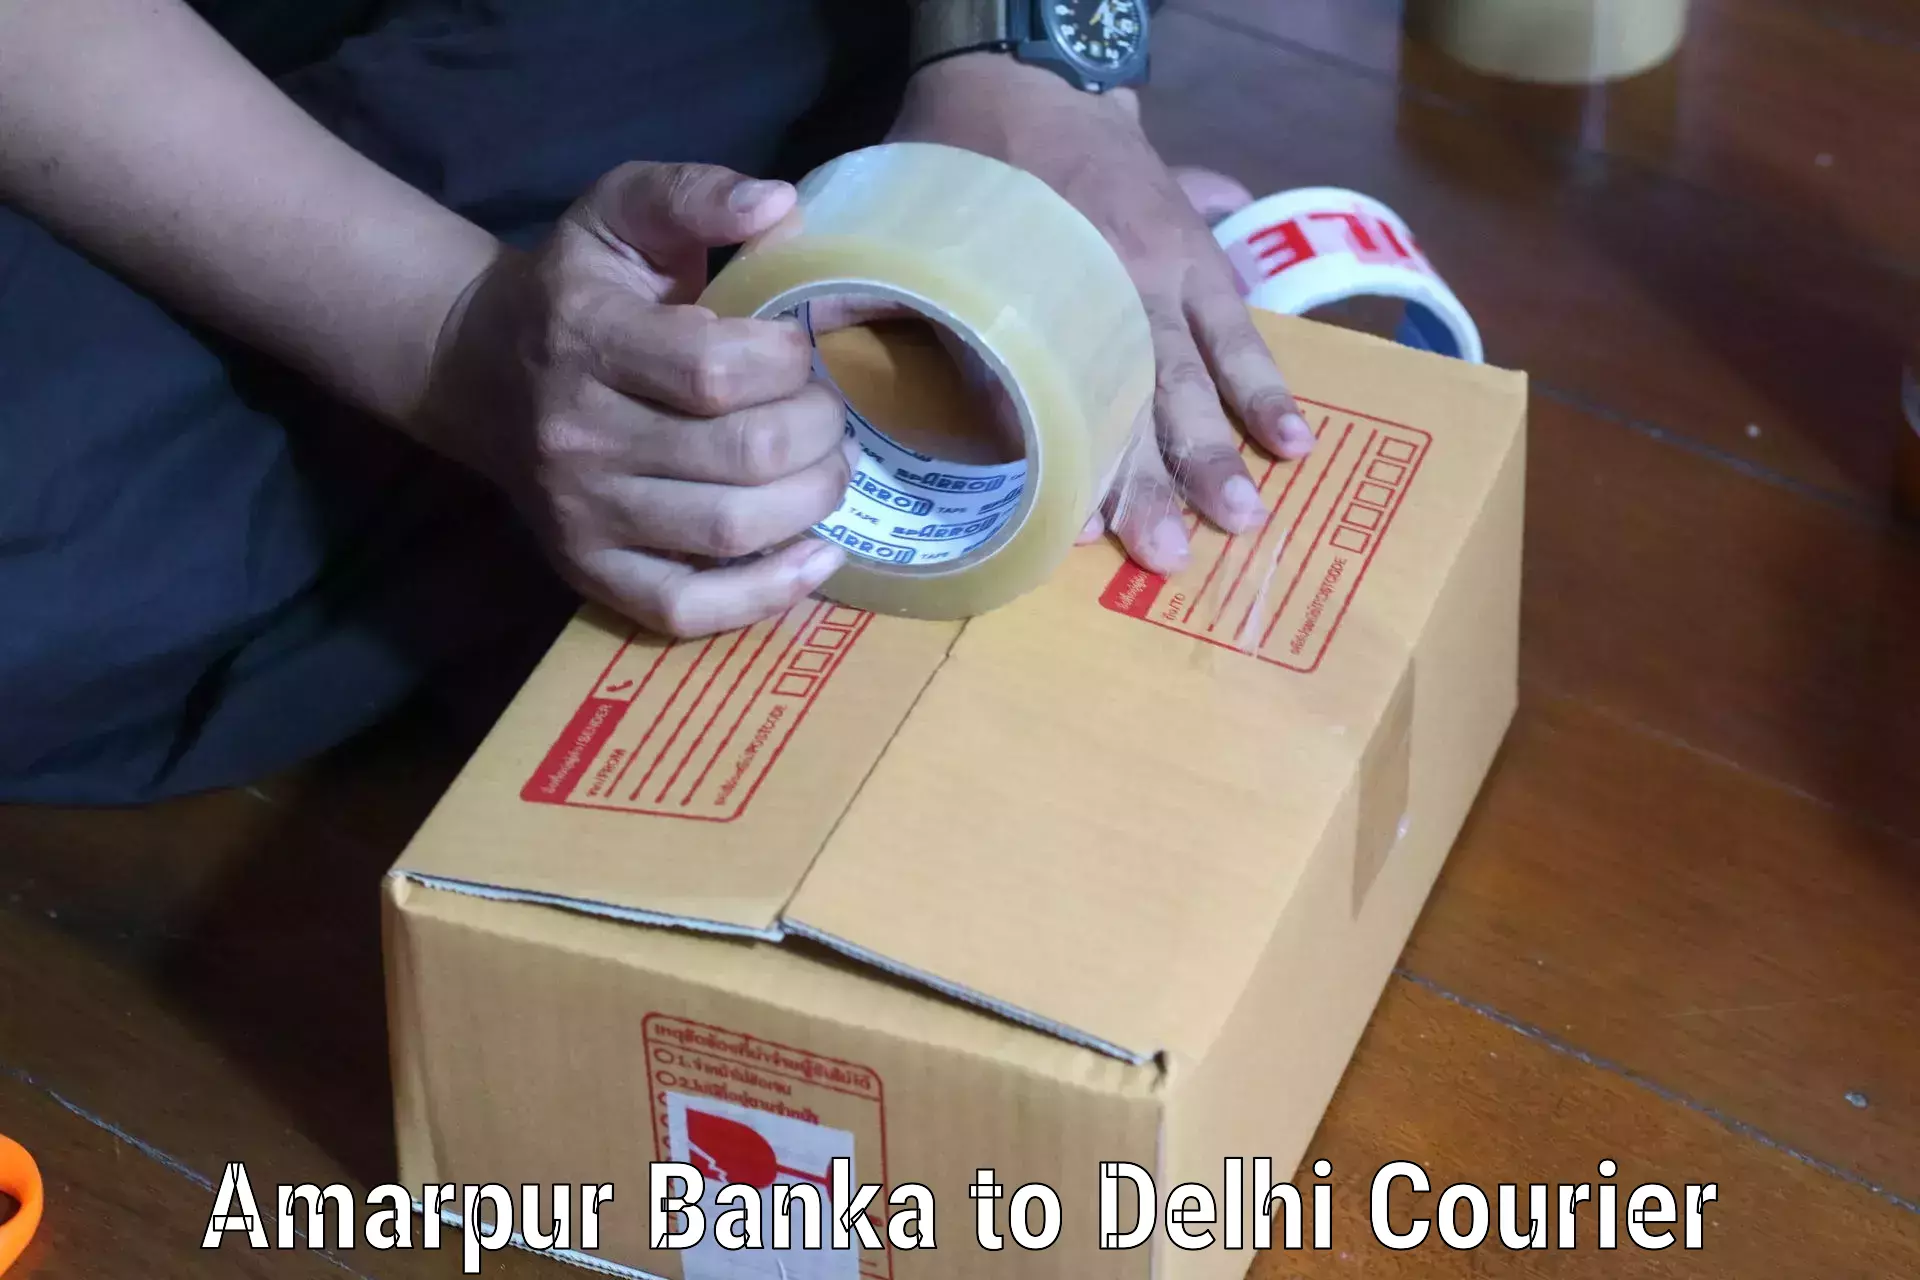 Courier dispatch services Amarpur Banka to Jawaharlal Nehru University New Delhi